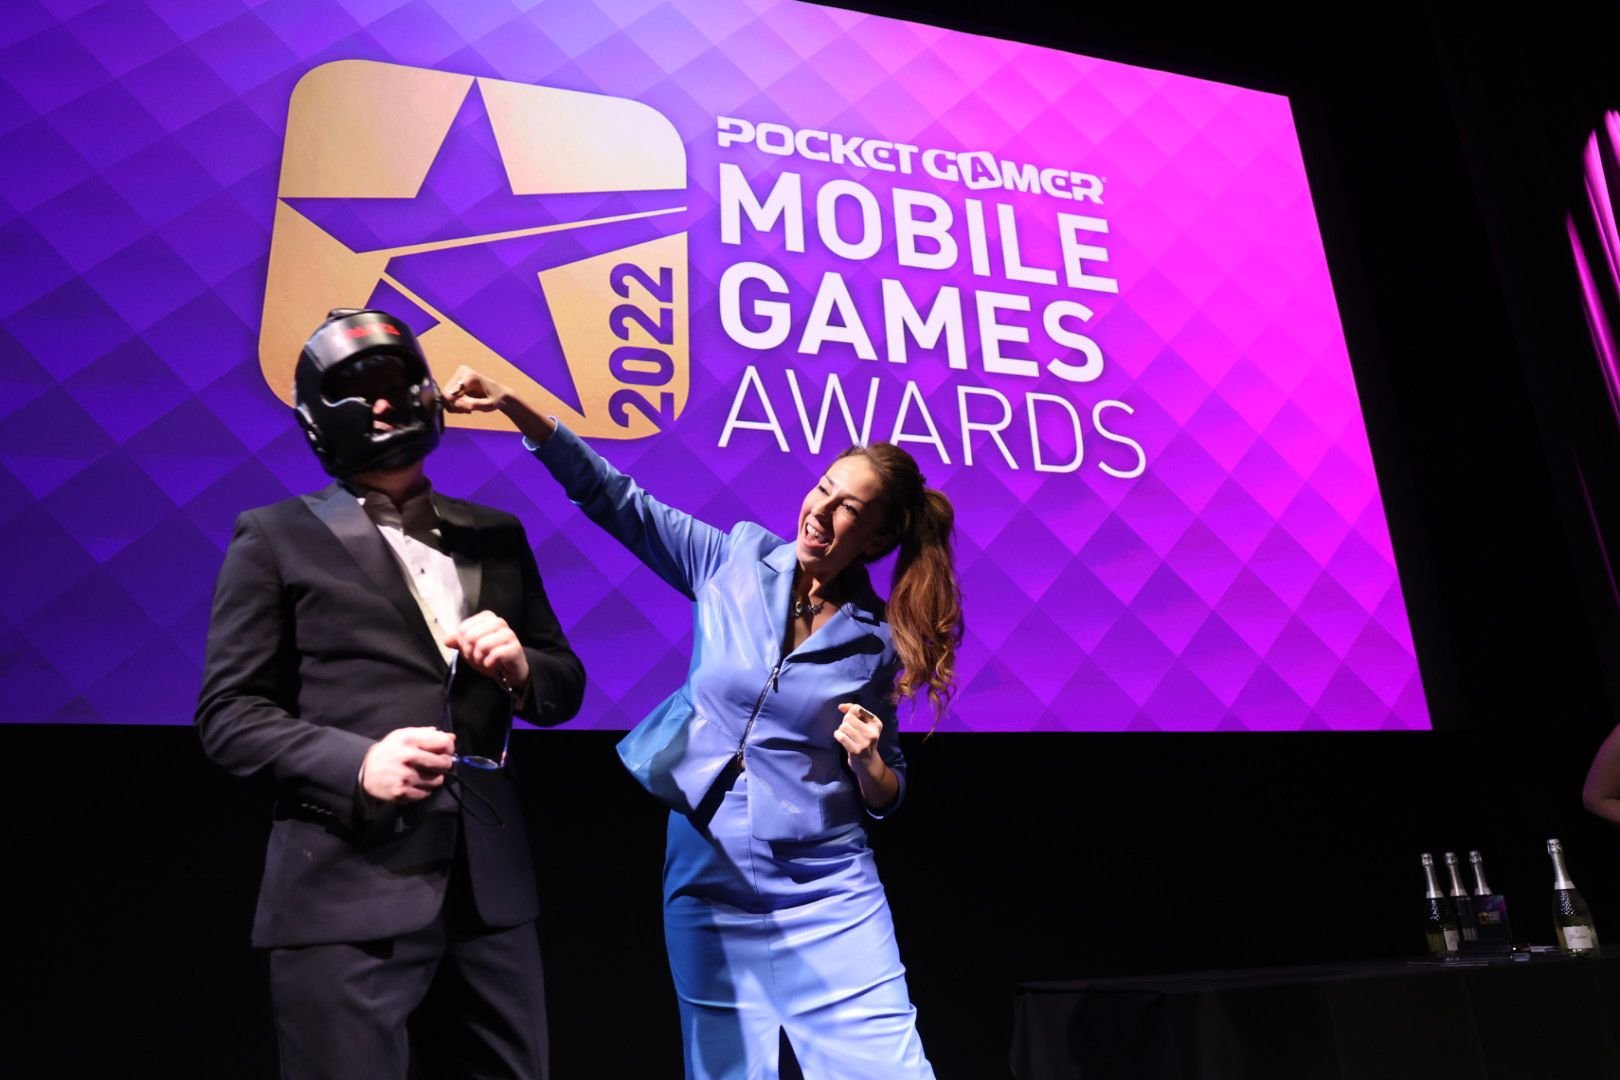 Pocket Gamer Mobile Games Awards 2020 winners revealed